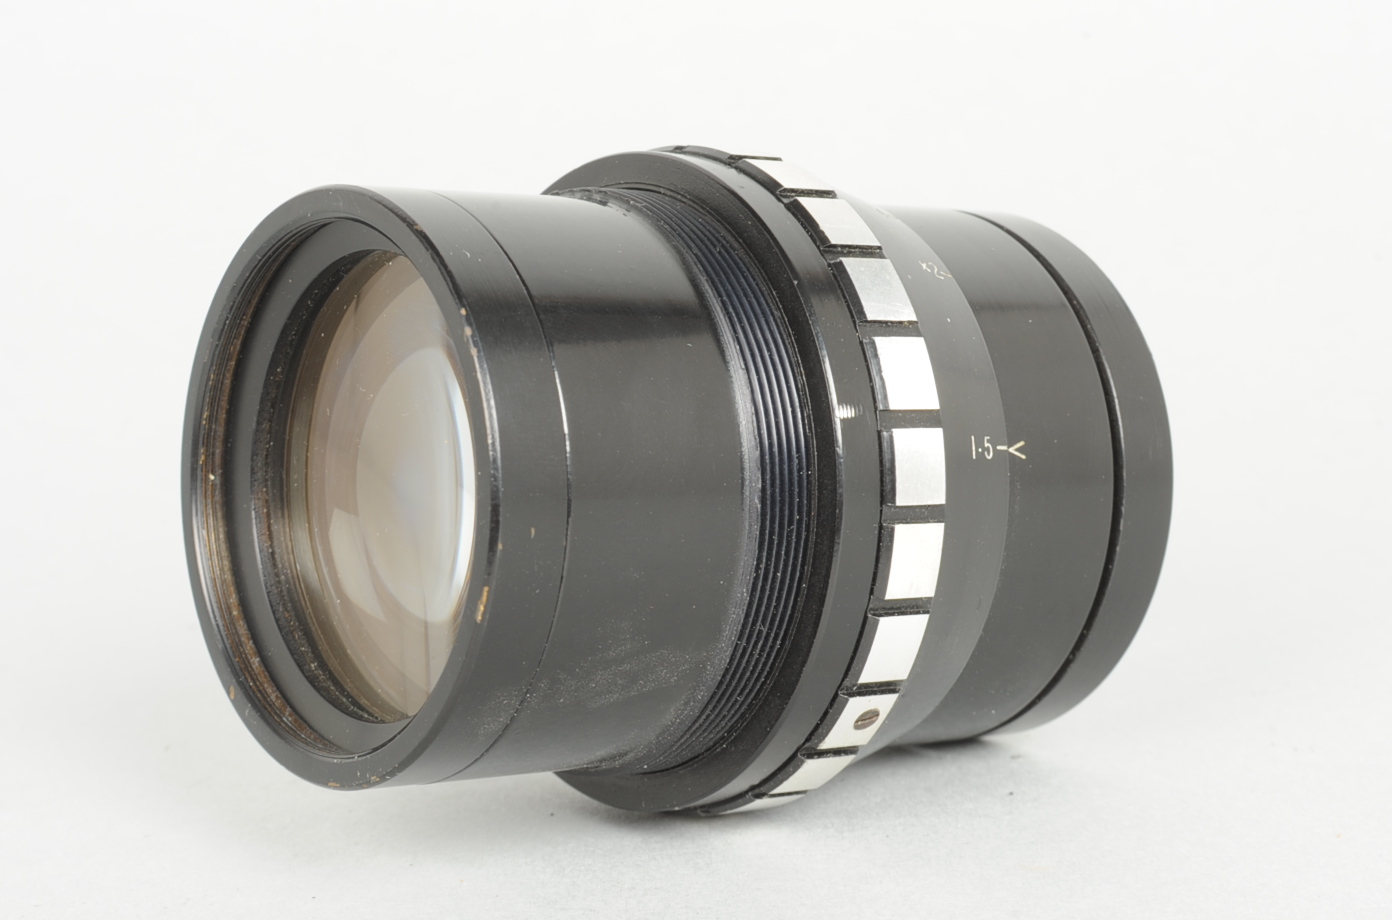 A Dallmeyer Octac Oscillograph 80mm f/1.5 Lens, serial no 719883, barrel G-VG, elements G, tiny nick - Image 2 of 3